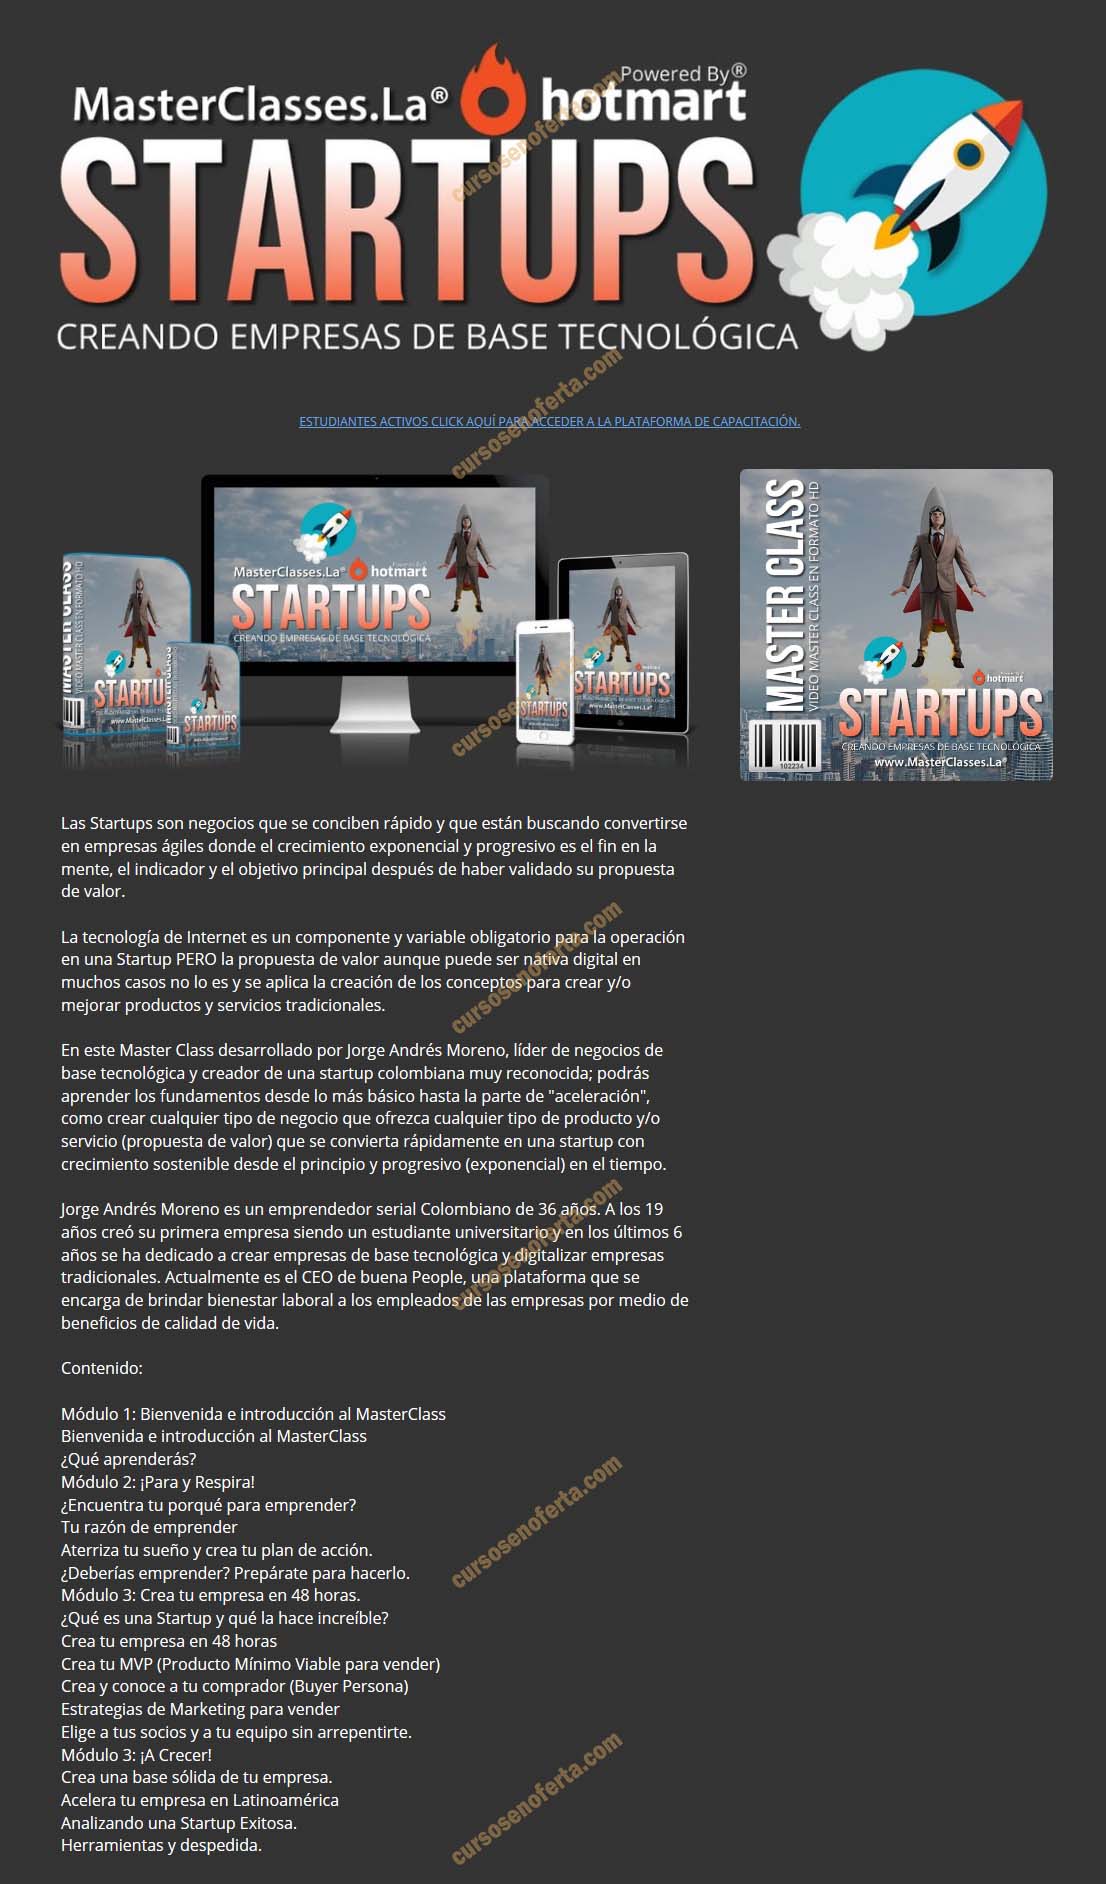 Startups - Creando empresas de base tecnológica